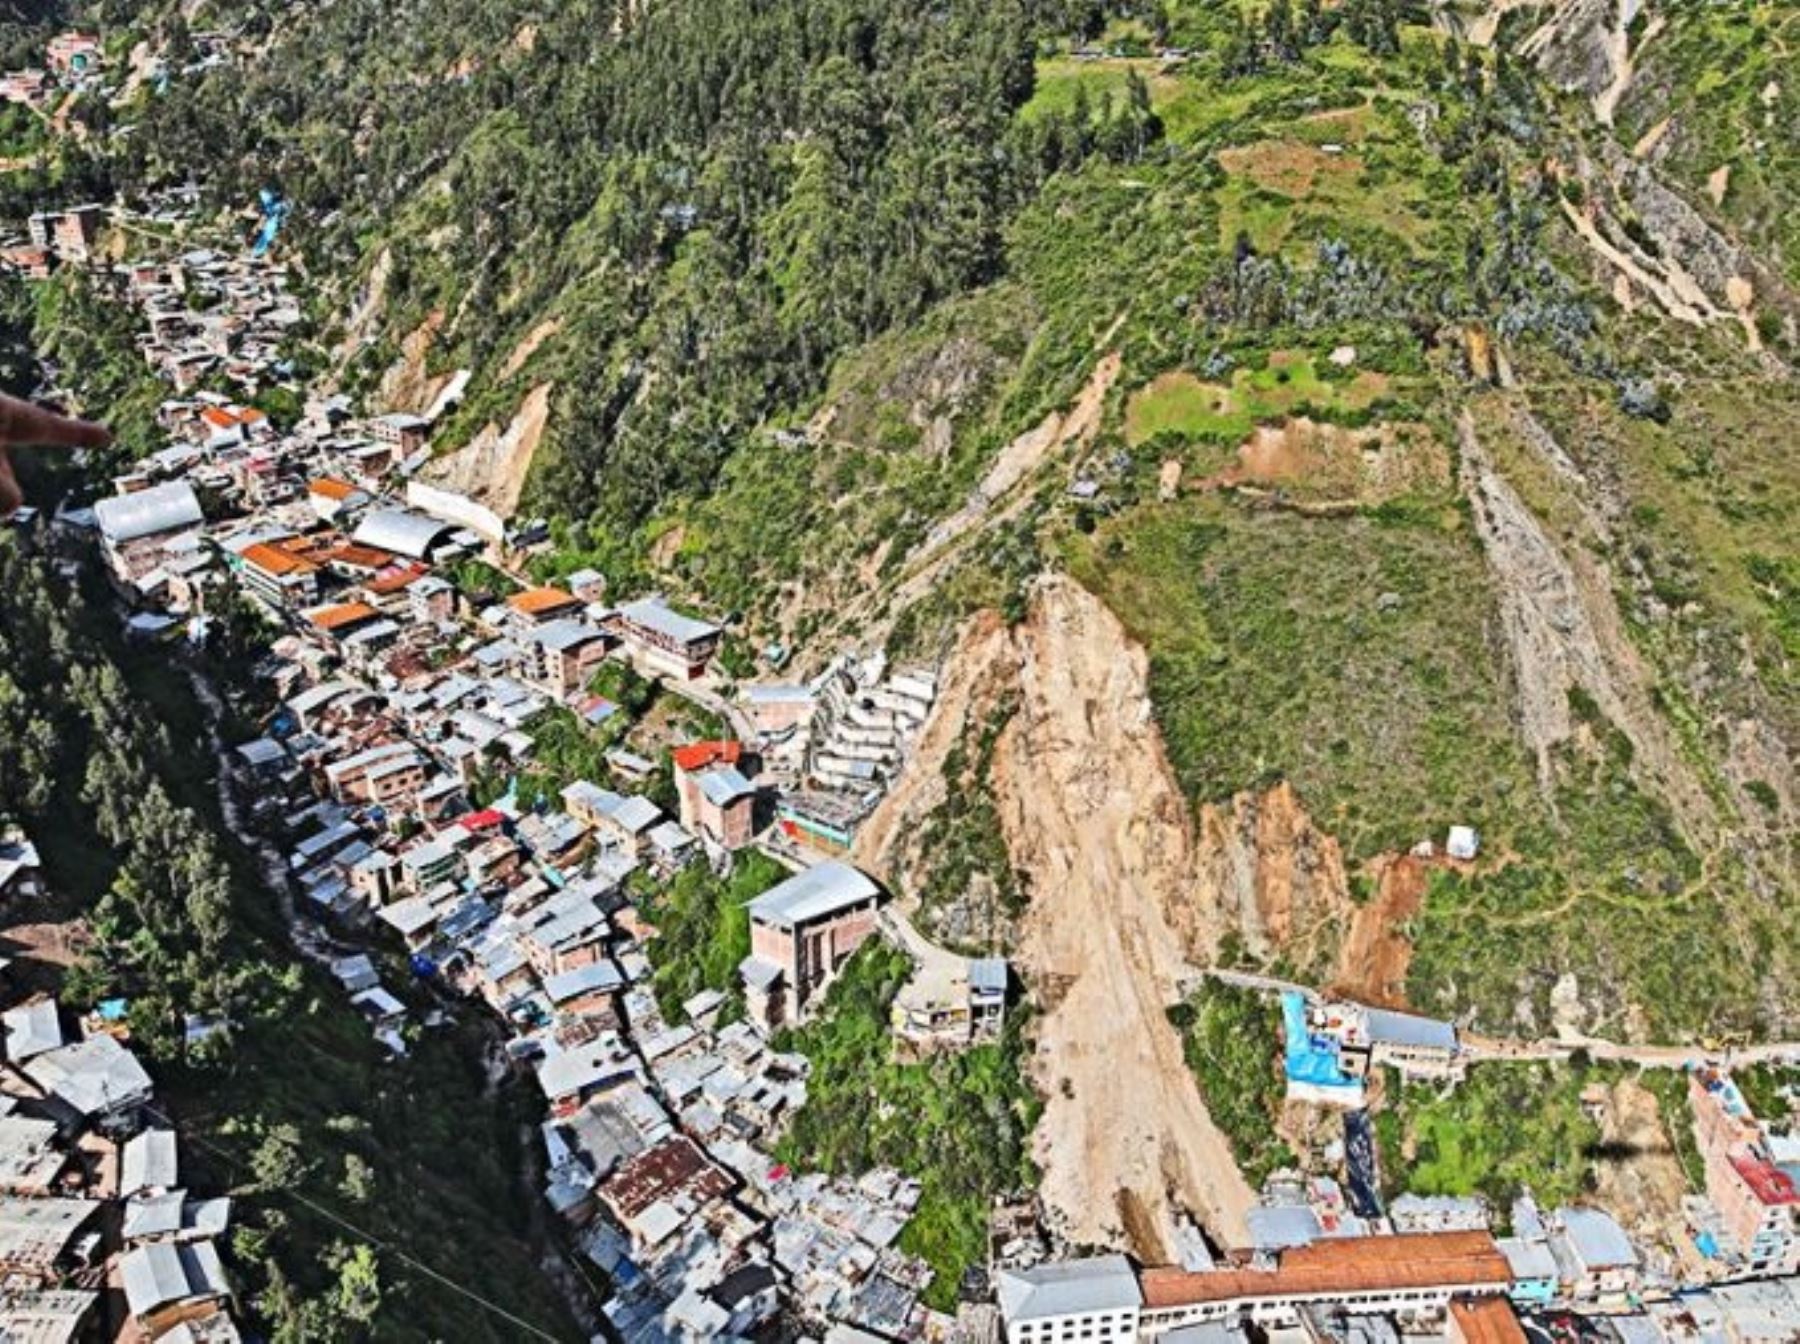 Vista aérea del centro poblado Retamas, en la provincia de Pataz, que resultó afectado por un deslizamiento de parte de un cerro que sepultó varias viviendas. Foto: Gore La Libertad